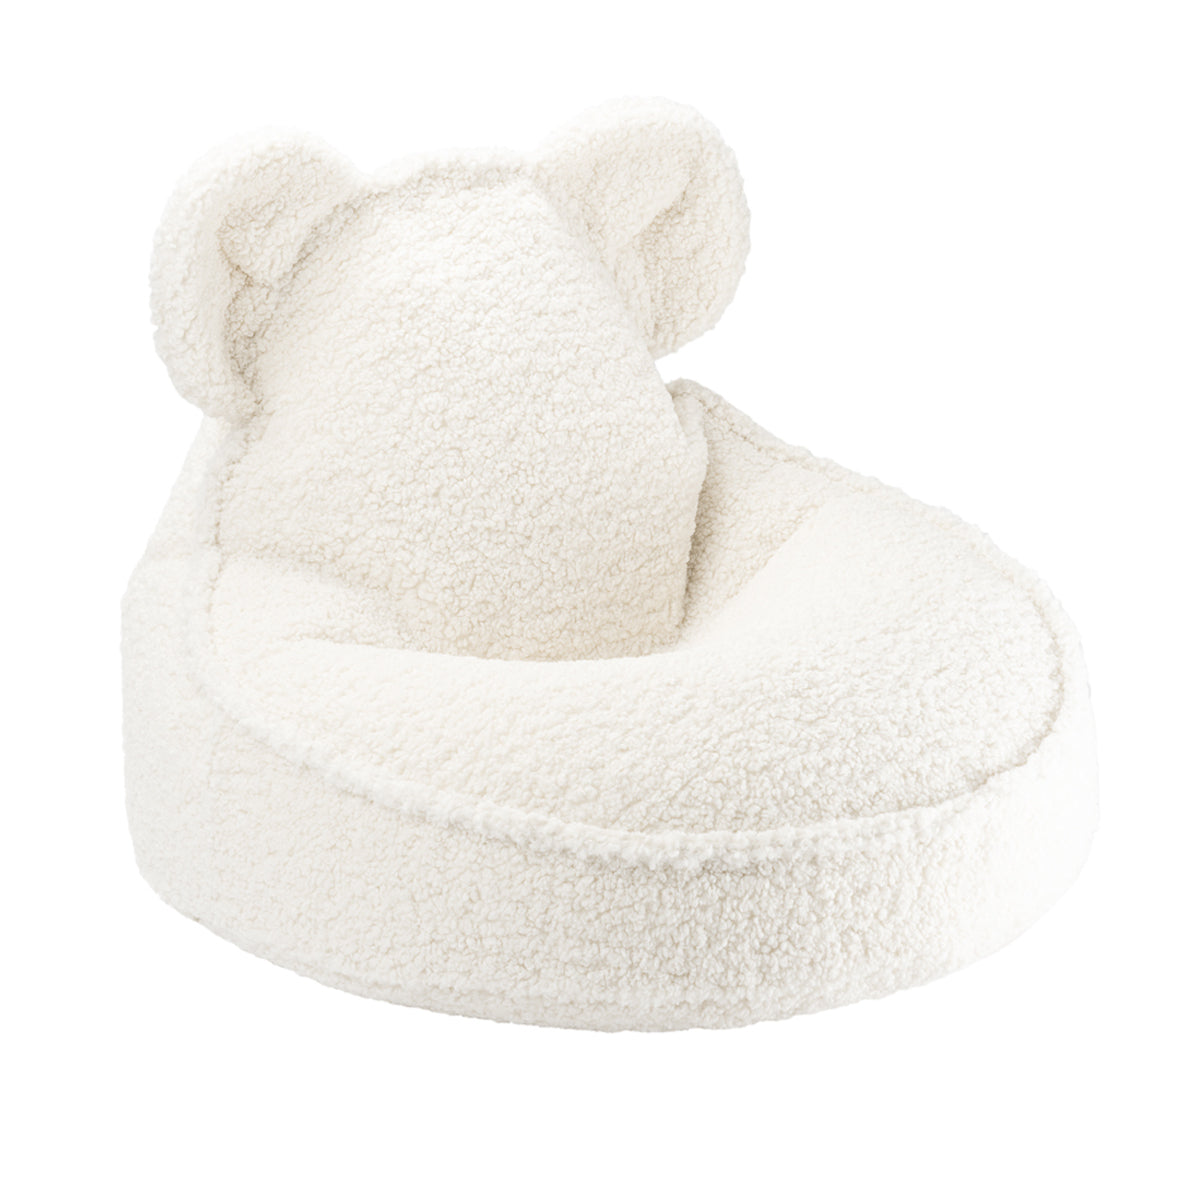 De Wigiwama beanbag bear cream white is de perfecte plek voor jouw kindje om even lekker te relaxen. Deze zitzak zit heerlijk zacht en ziet er ook nog eens super schattig uit want hij heeft twee grote beren oren. VanZus.